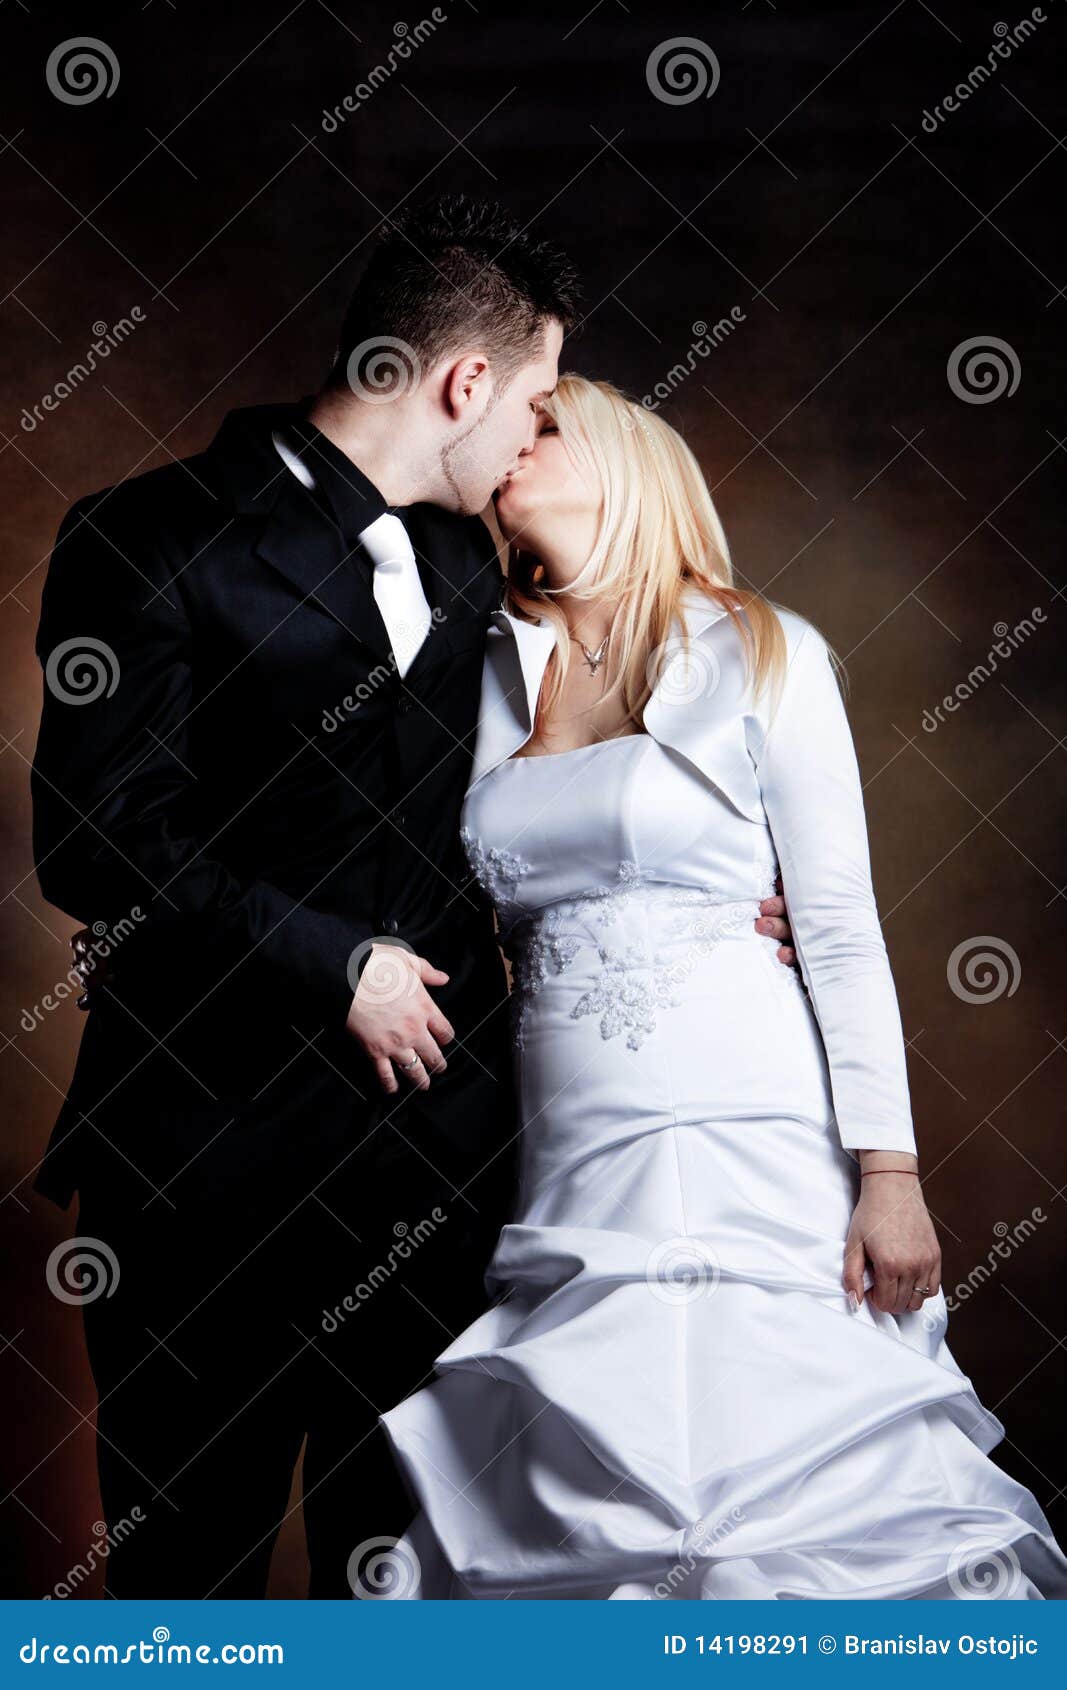 婚姻的，美丽的浪漫新娘和新郎亲吻 库存图片. 图片 包括有 系列, 喜悦, 女孩, 愉快, 情感, 新郎 - 67970581